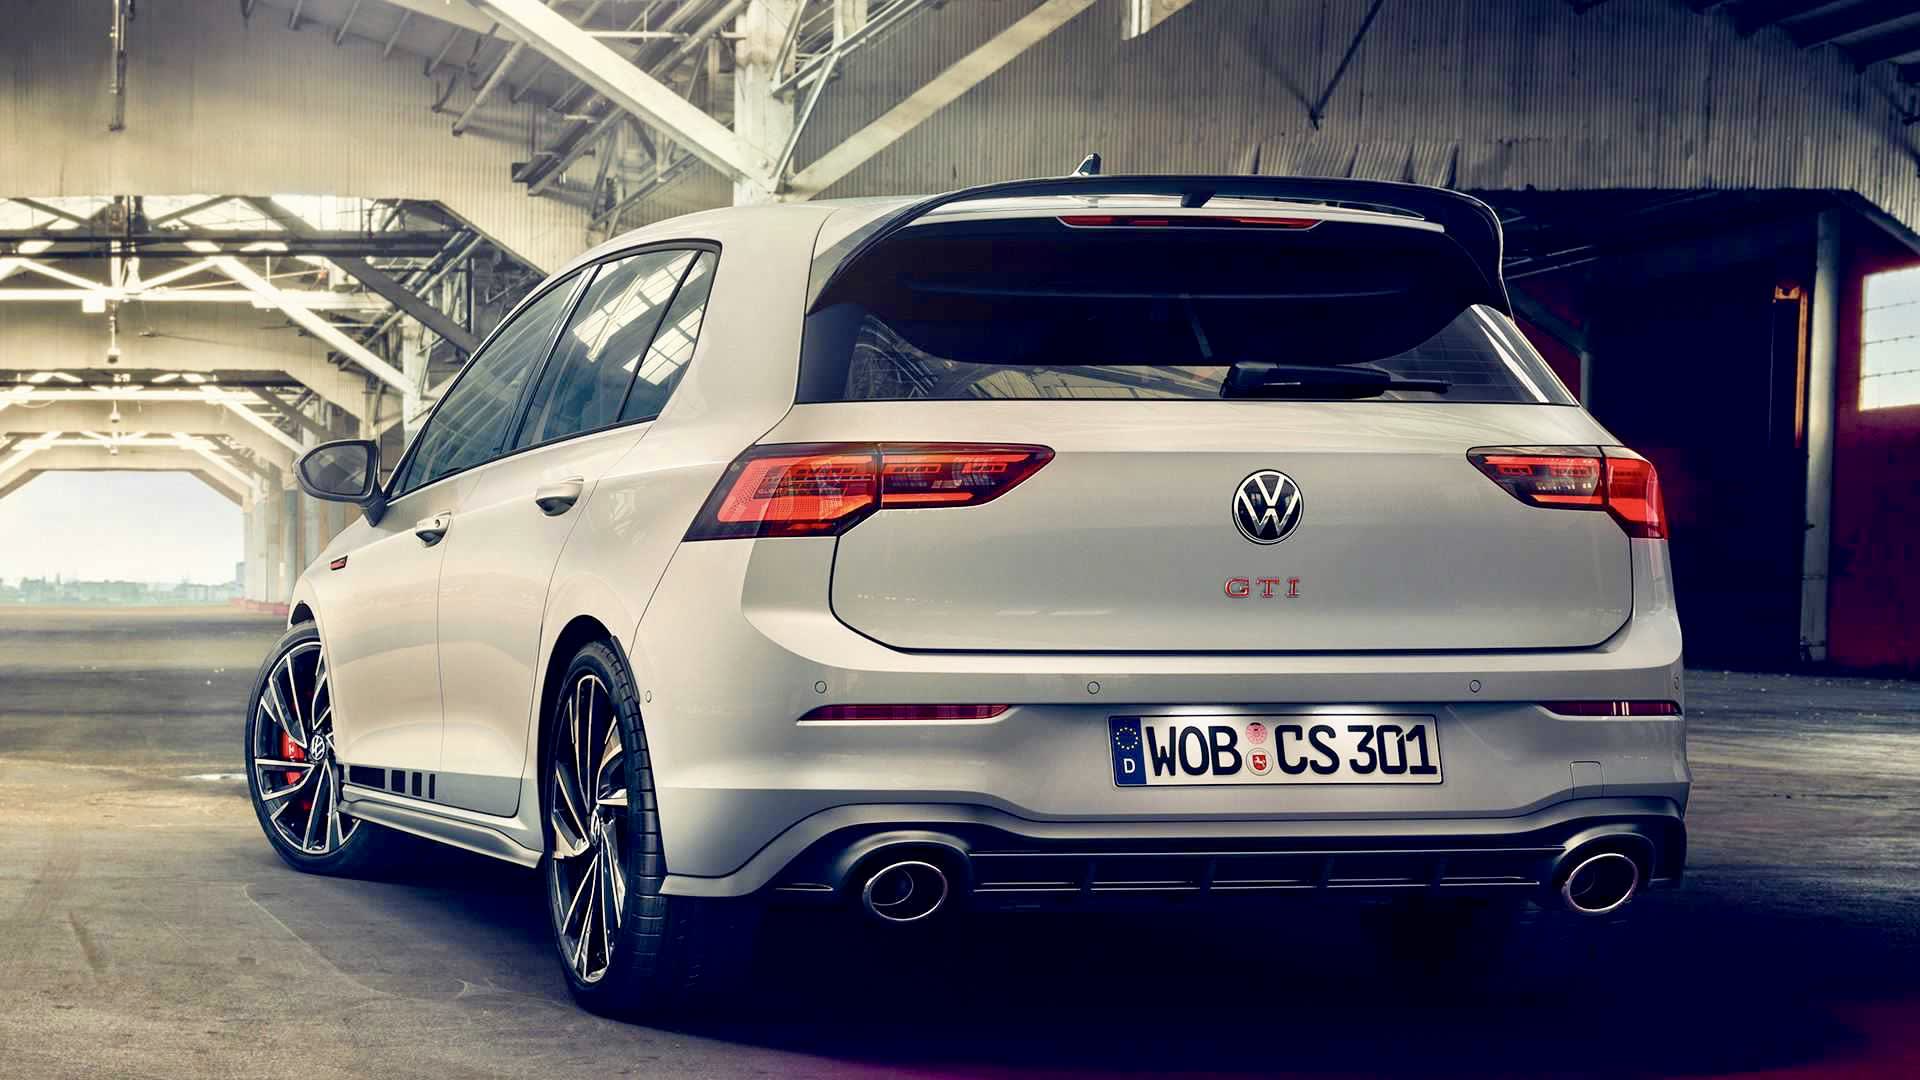 2021 Volkswagen Golf Gti Clubsport 45 Wallpapers